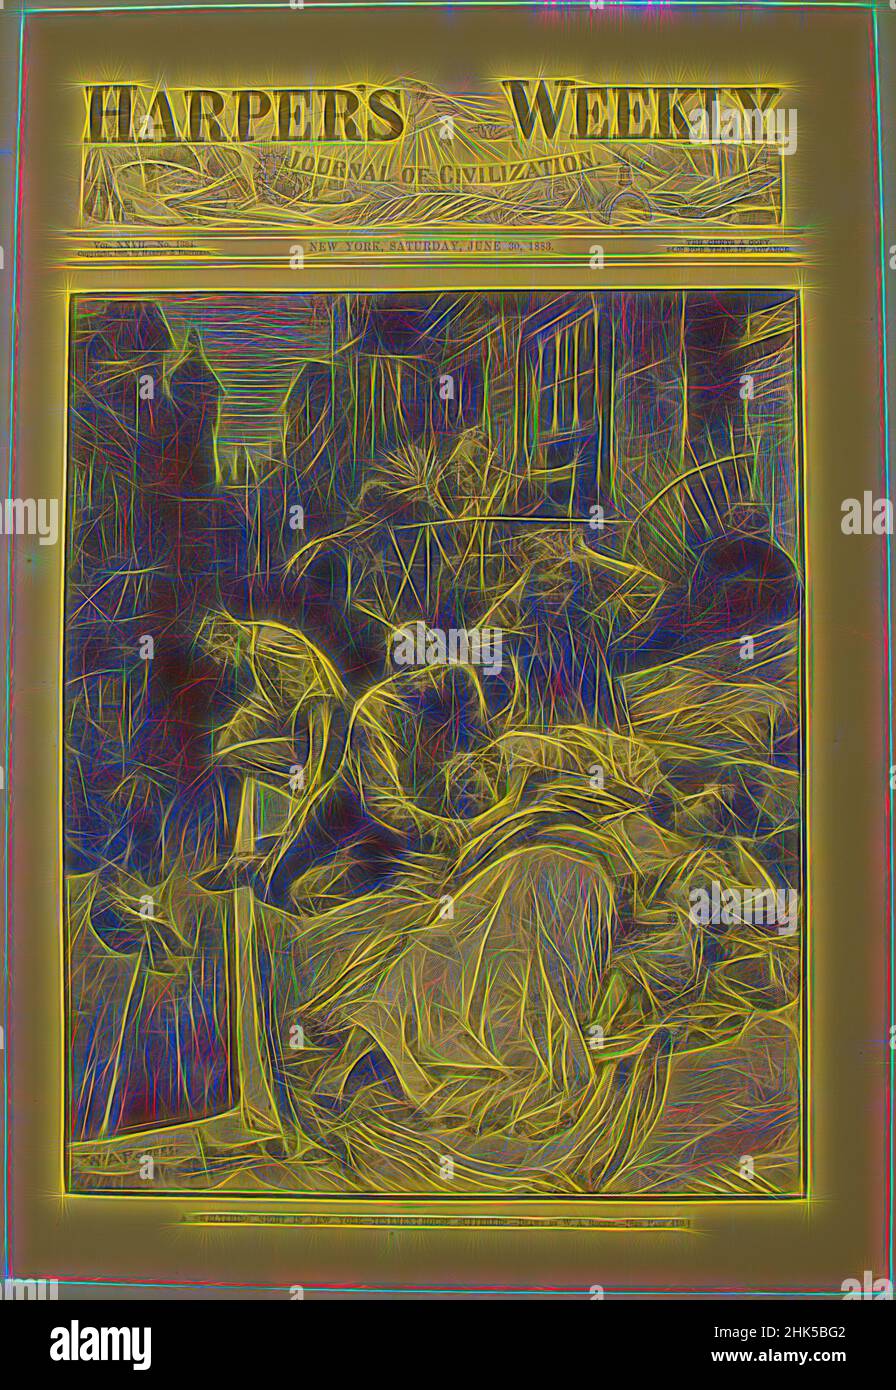 Ispirato da Una notte sweltering a New York - sufferers di Tenement House, William Allen Rogers, americano, 1854-1931, incisione di legno, 1883, immagine: 14 3/8 x 9 1/4 pollici, 36,5 x 23,5 cm, reinventata da Artotop. L'arte classica reinventata con un tocco moderno. Design di calda e allegra luminosità e di raggi di luce. La fotografia si ispira al surrealismo e al futurismo, abbracciando l'energia dinamica della tecnologia moderna, del movimento, della velocità e rivoluzionando la cultura Foto Stock